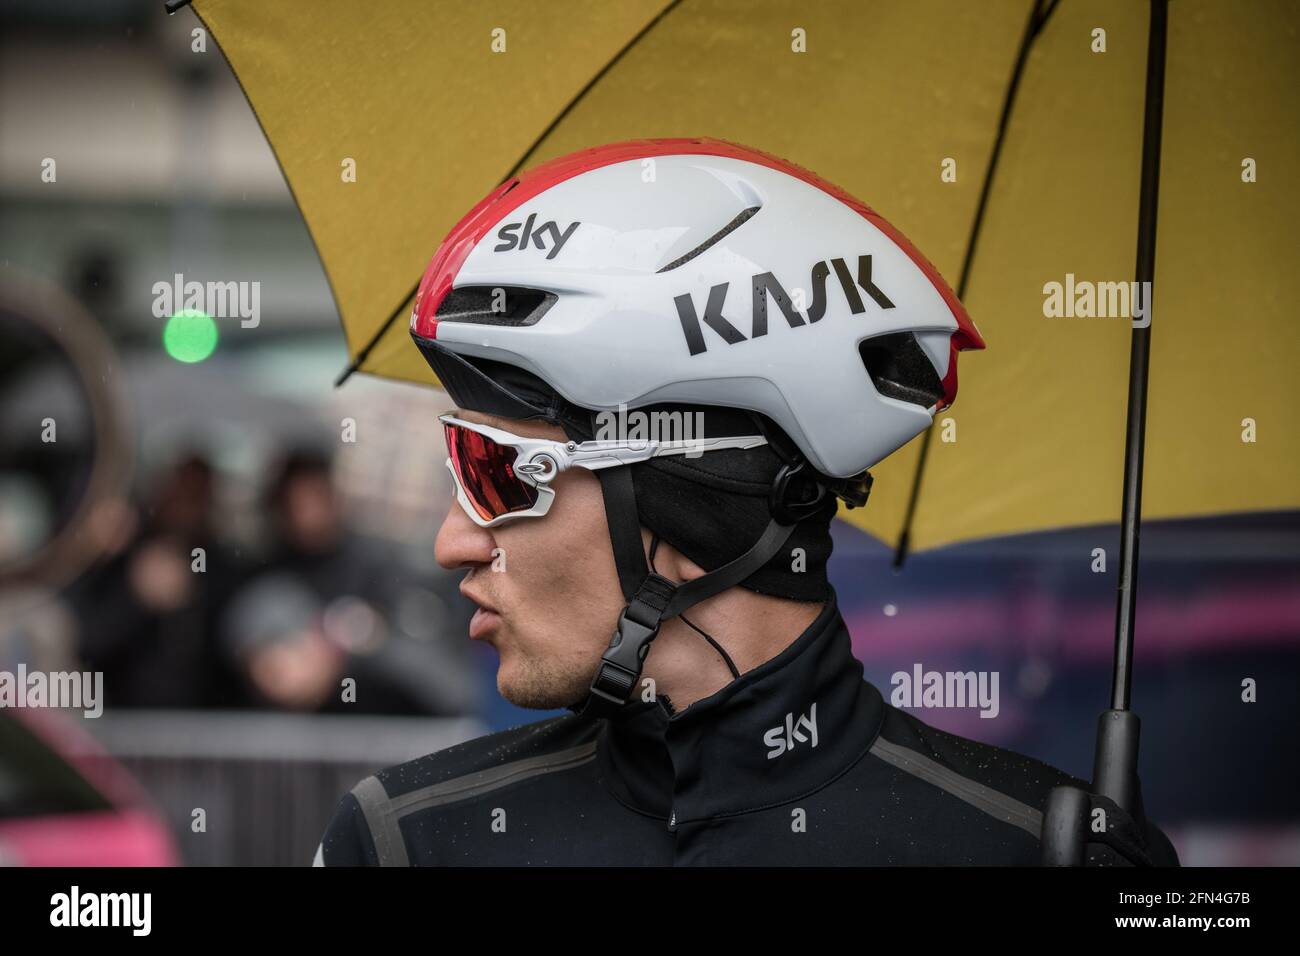 28/04/2019. Liège–Bastogne–Liège. Team sky rider Michał Kwiatkowski. Stock Photo